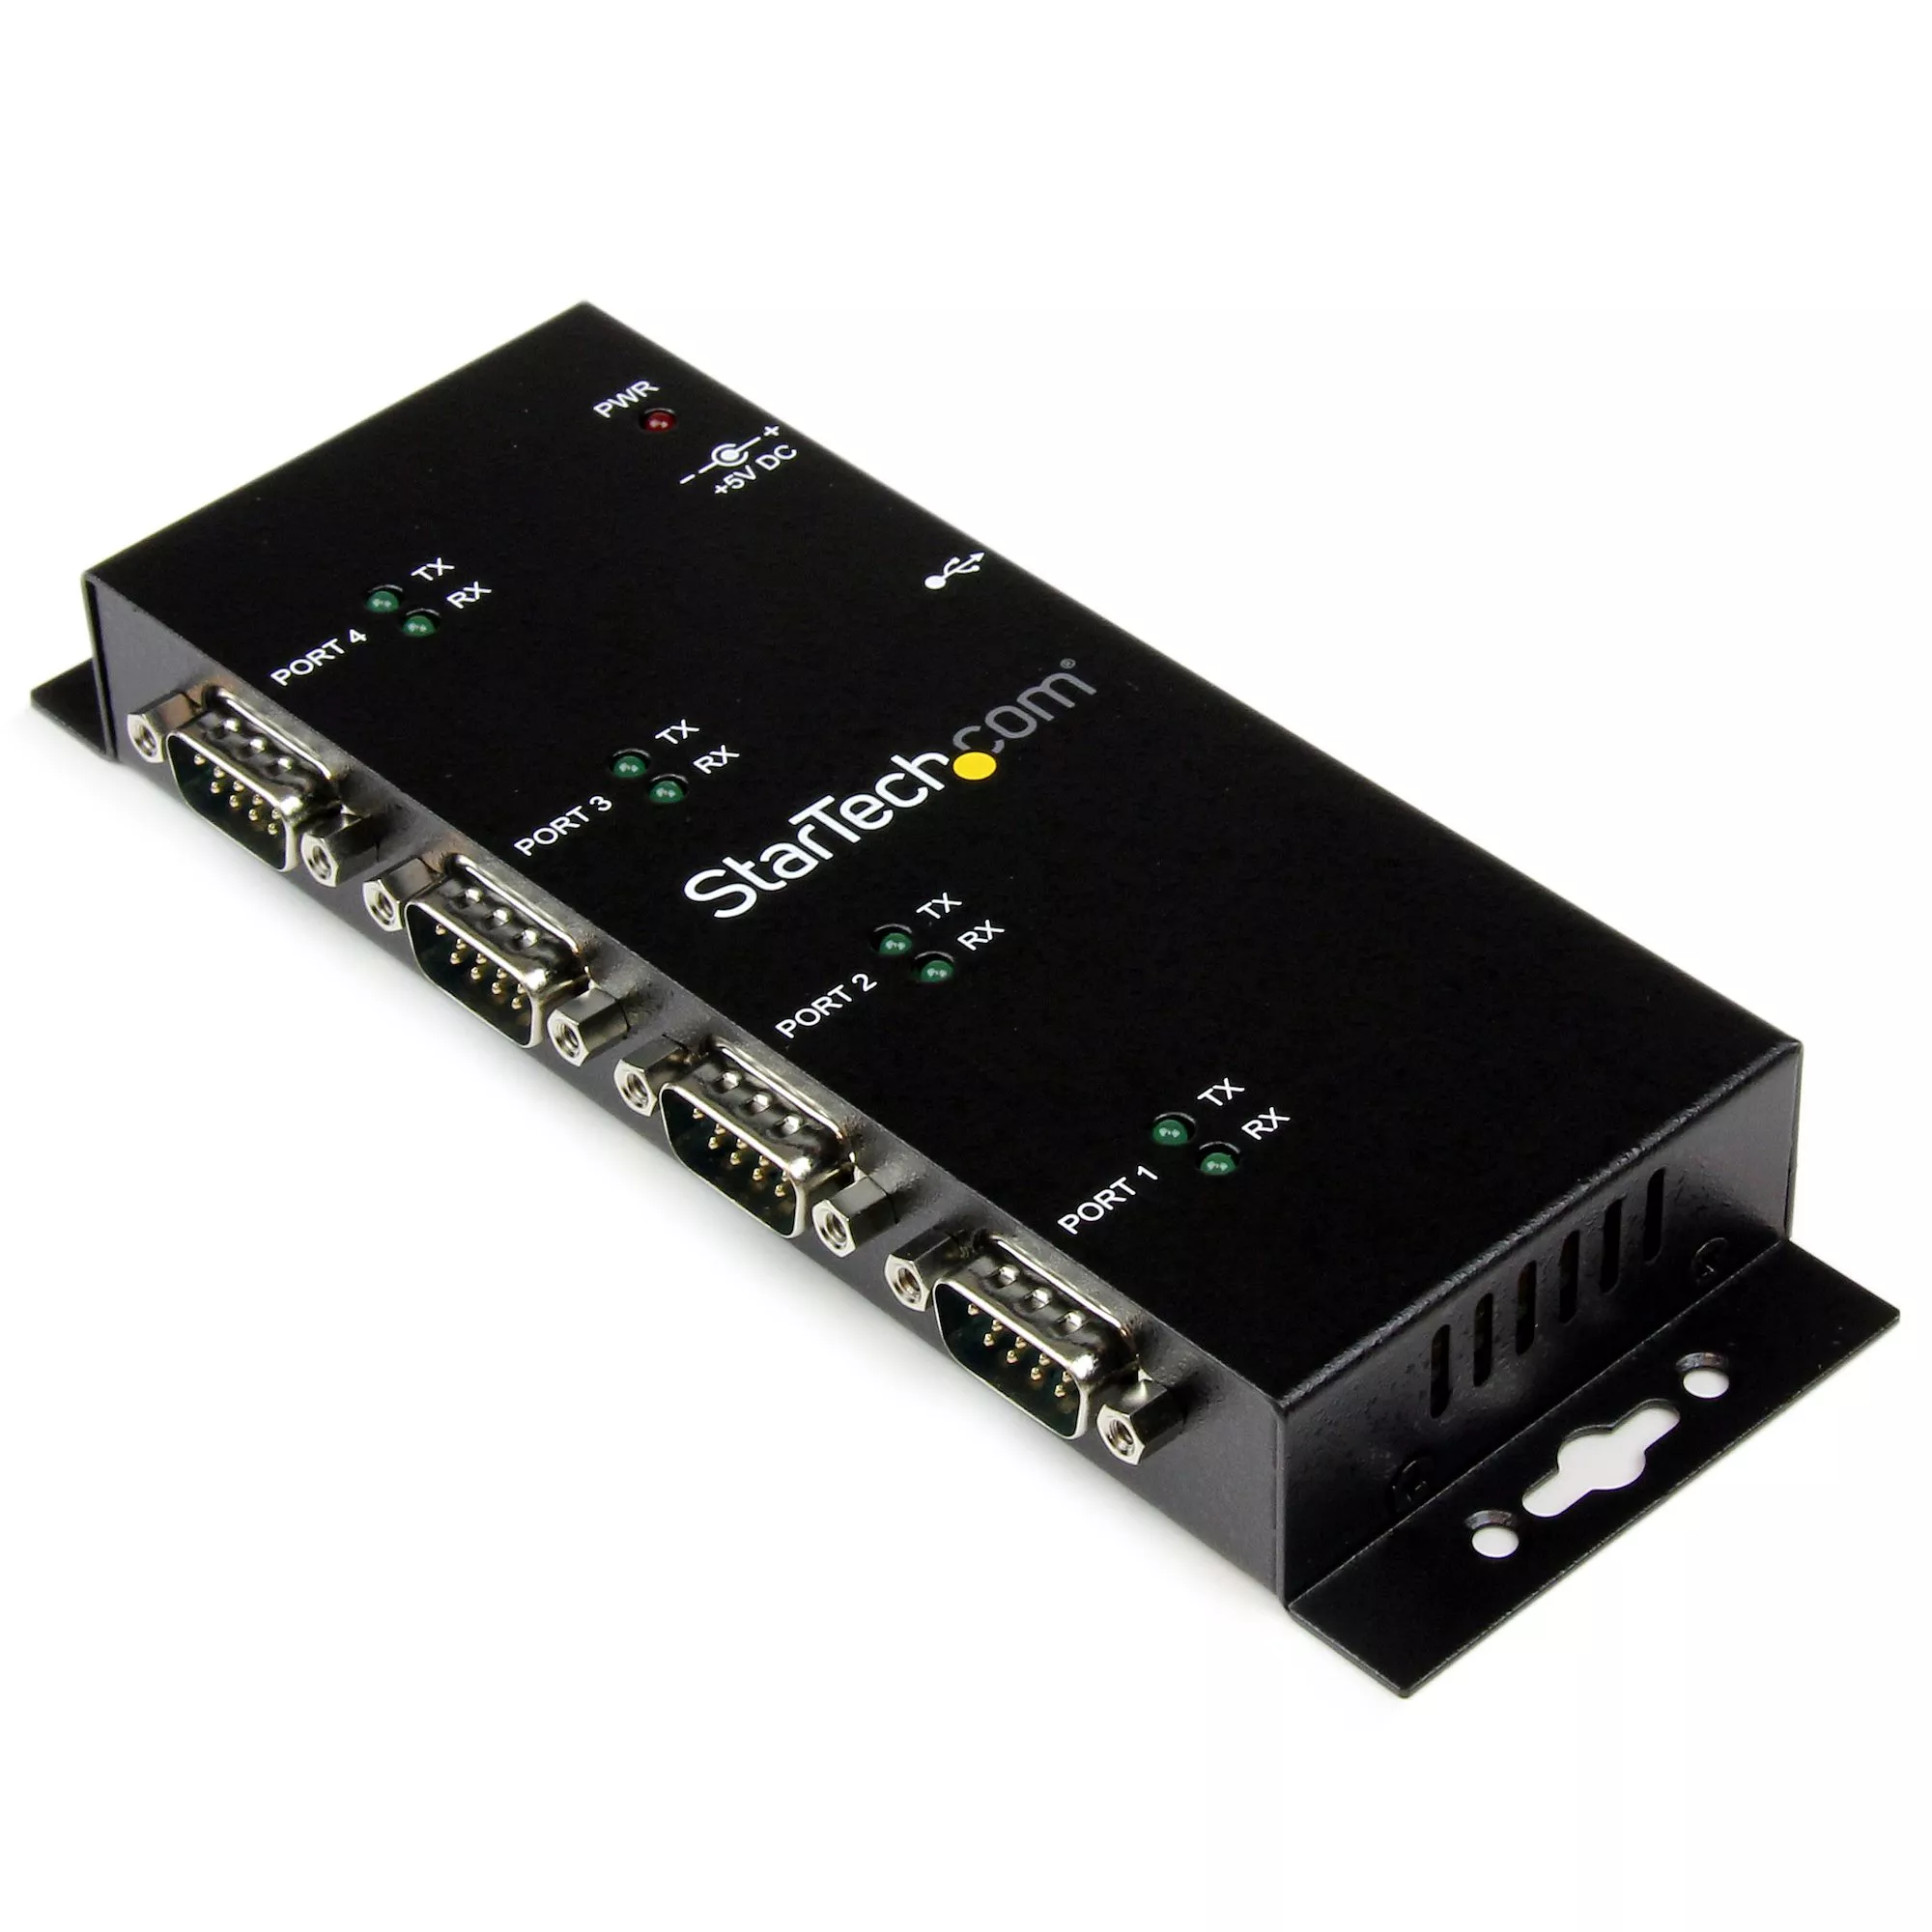 Achat StarTech.com Hub adaptateur USB vers série DB9 RS232 4 au meilleur prix